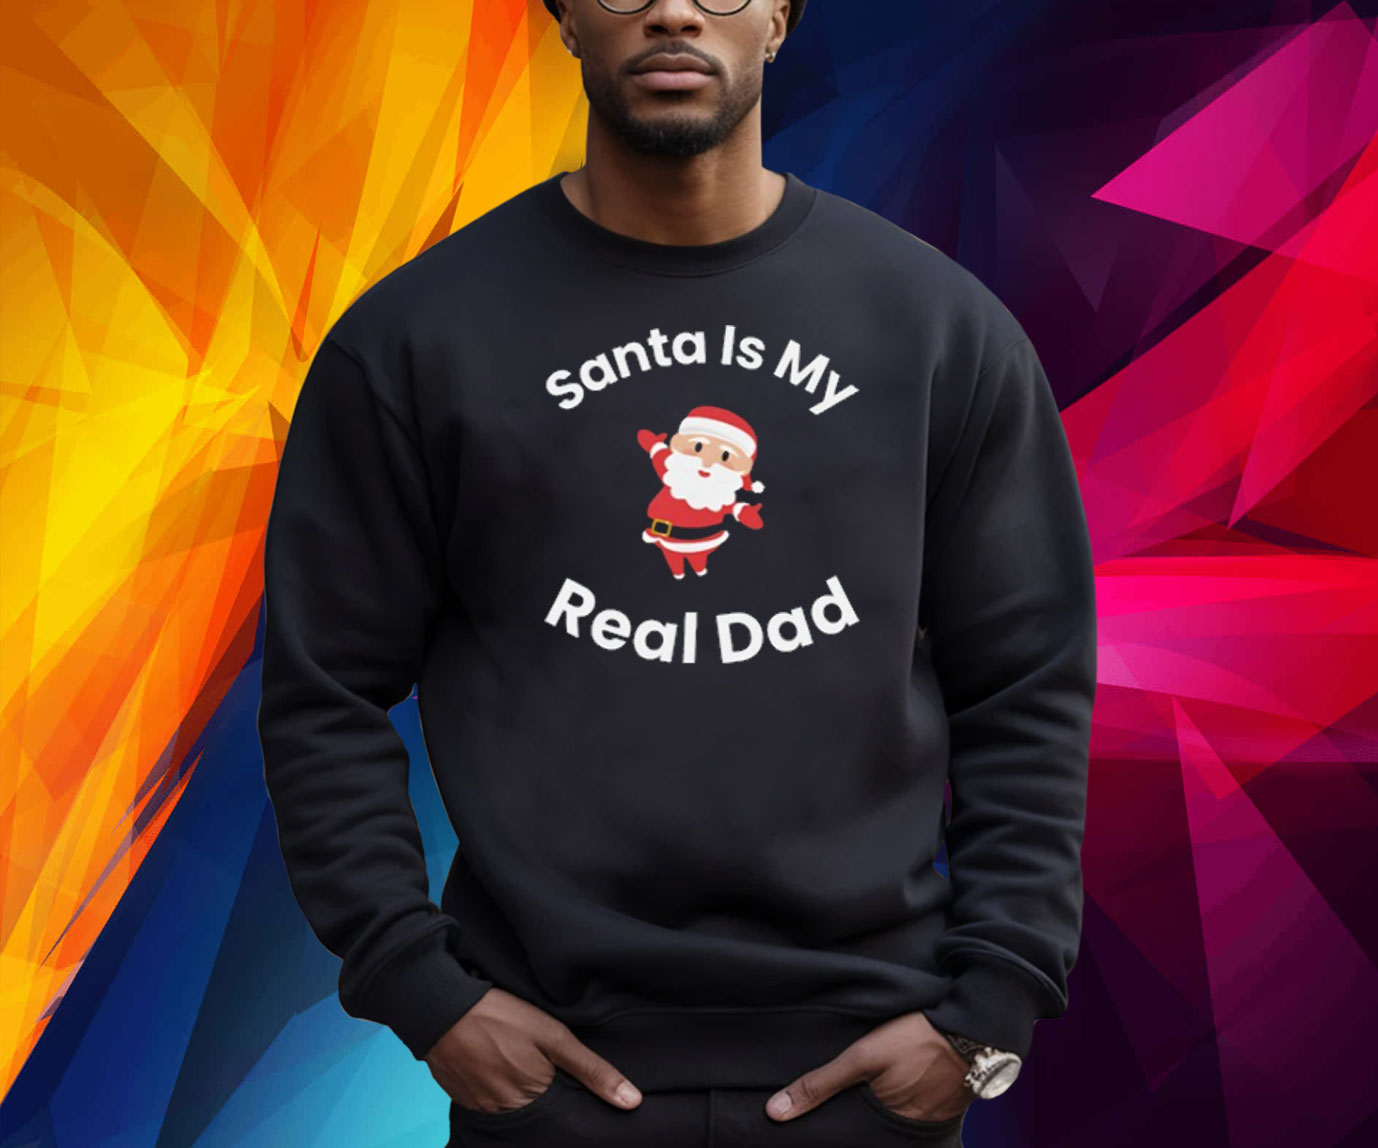 Santa Is My Real Dad Shirt